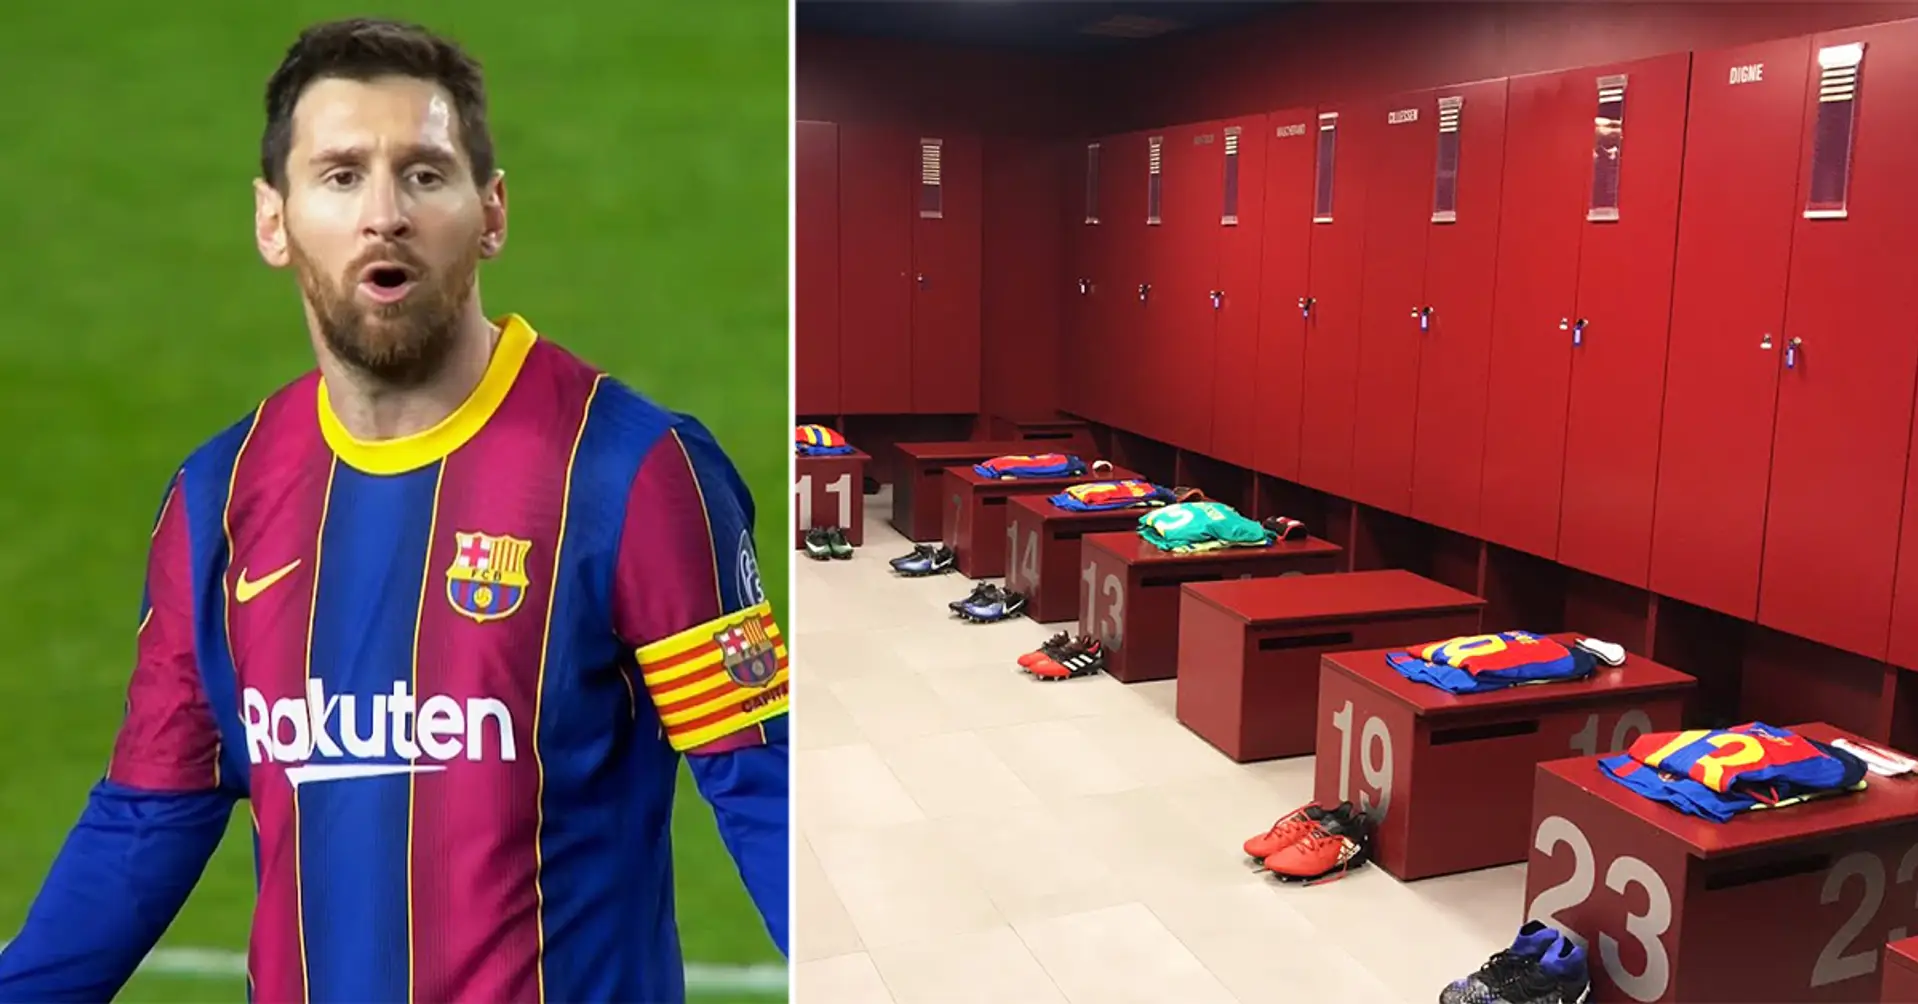 Révélé: Lionel Messi n'a laissé qu'UNE récompense dans le vestiaire du FC Barcelone